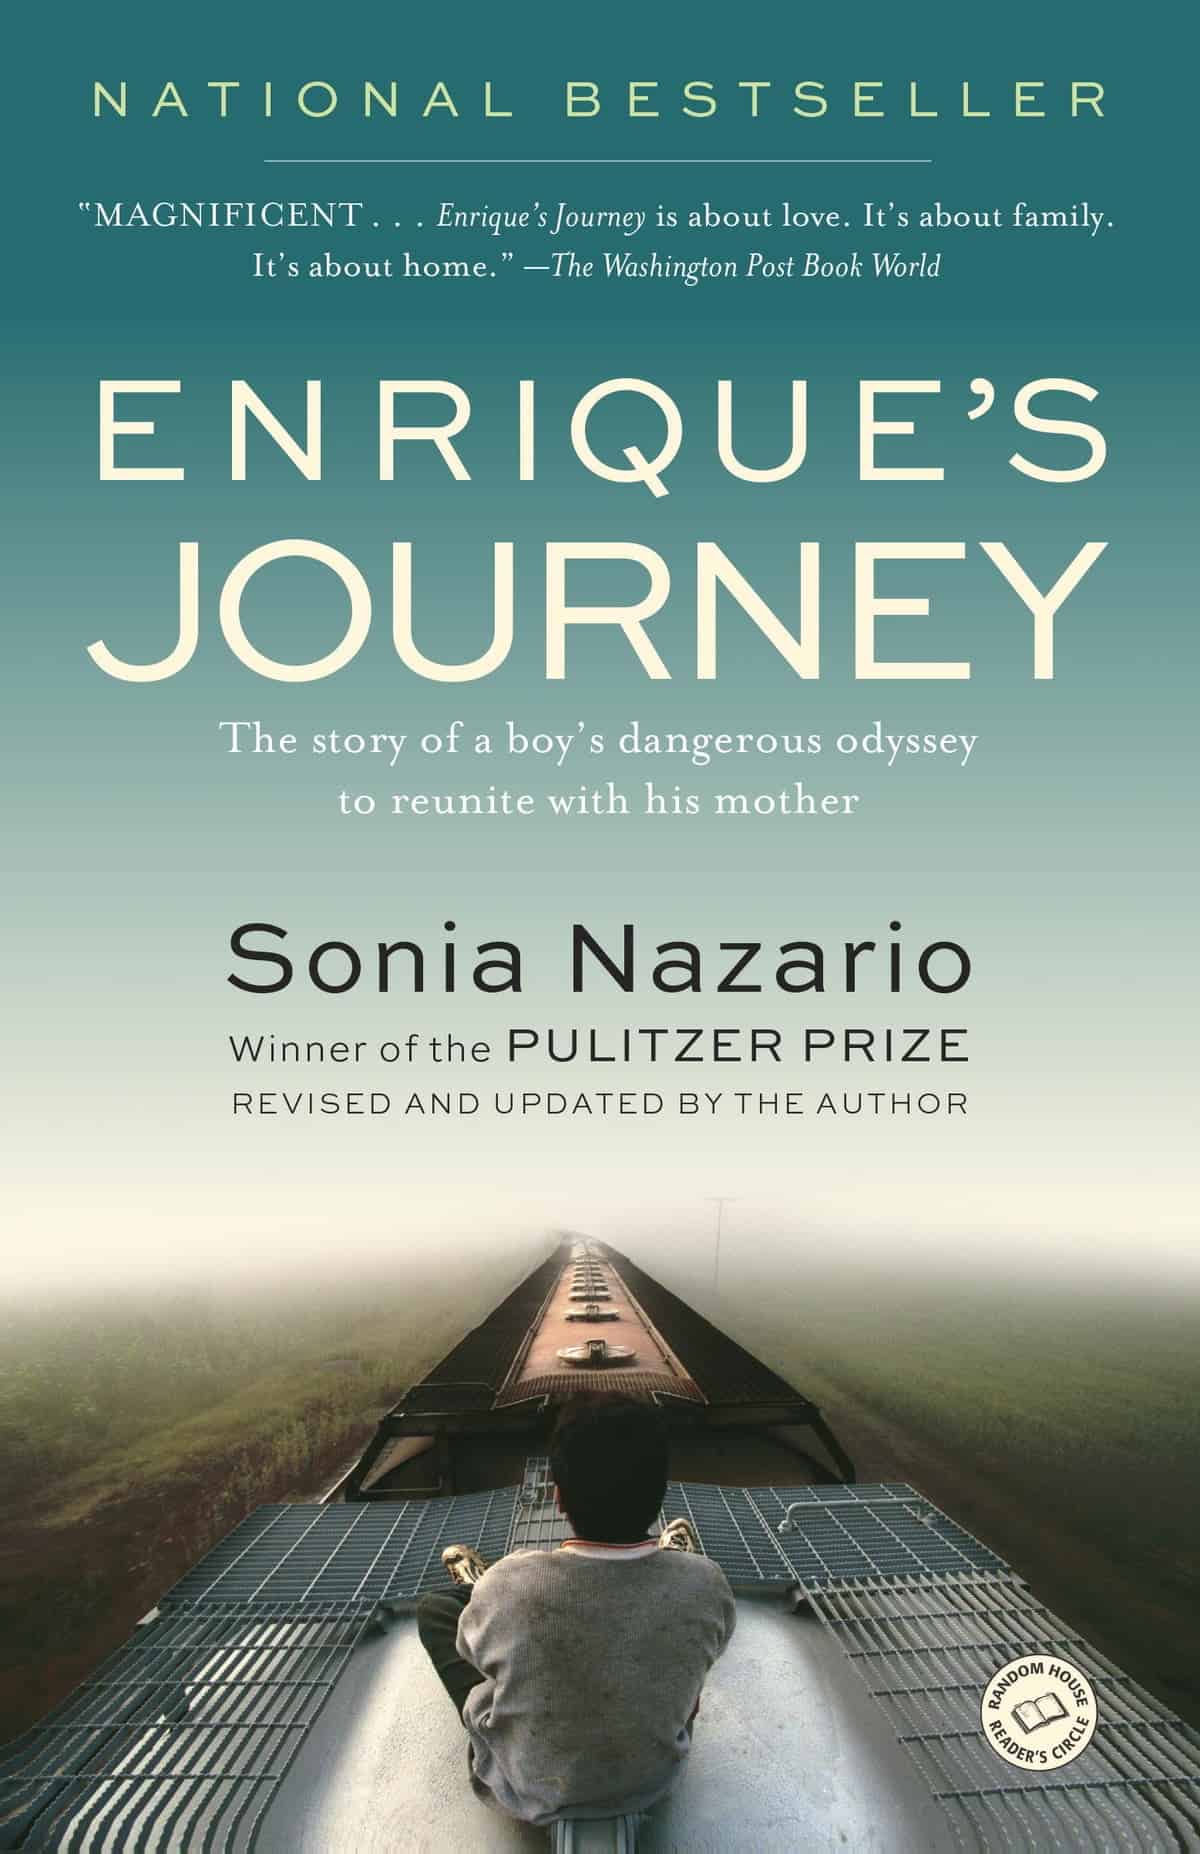 Enrique’s Journey by Sonia Nazario